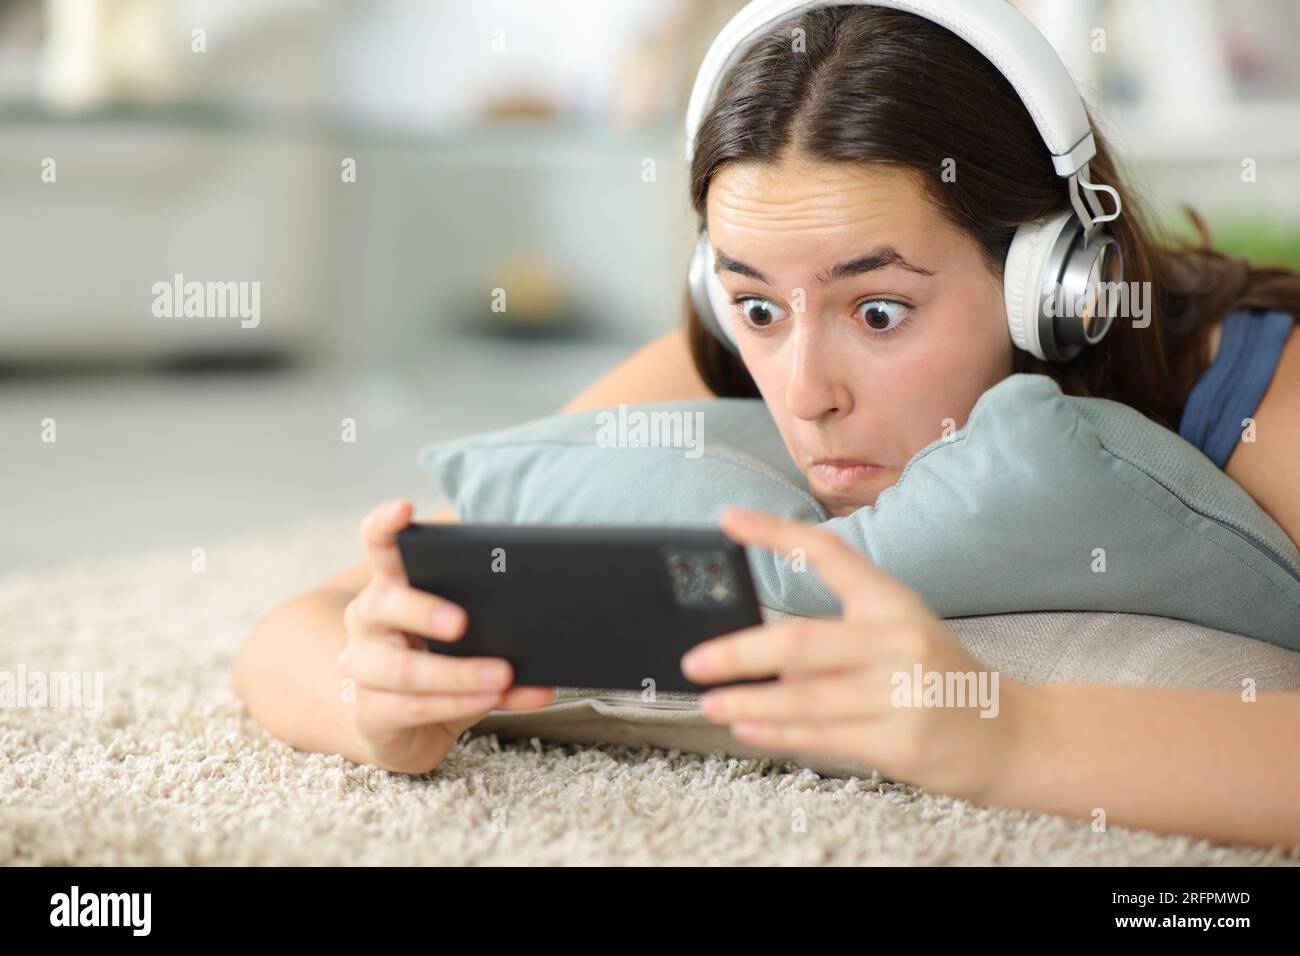 Verblüffte Frau, die zu Hause ein Heaphon trägt und Online-Inhalte ansieht Stockfoto